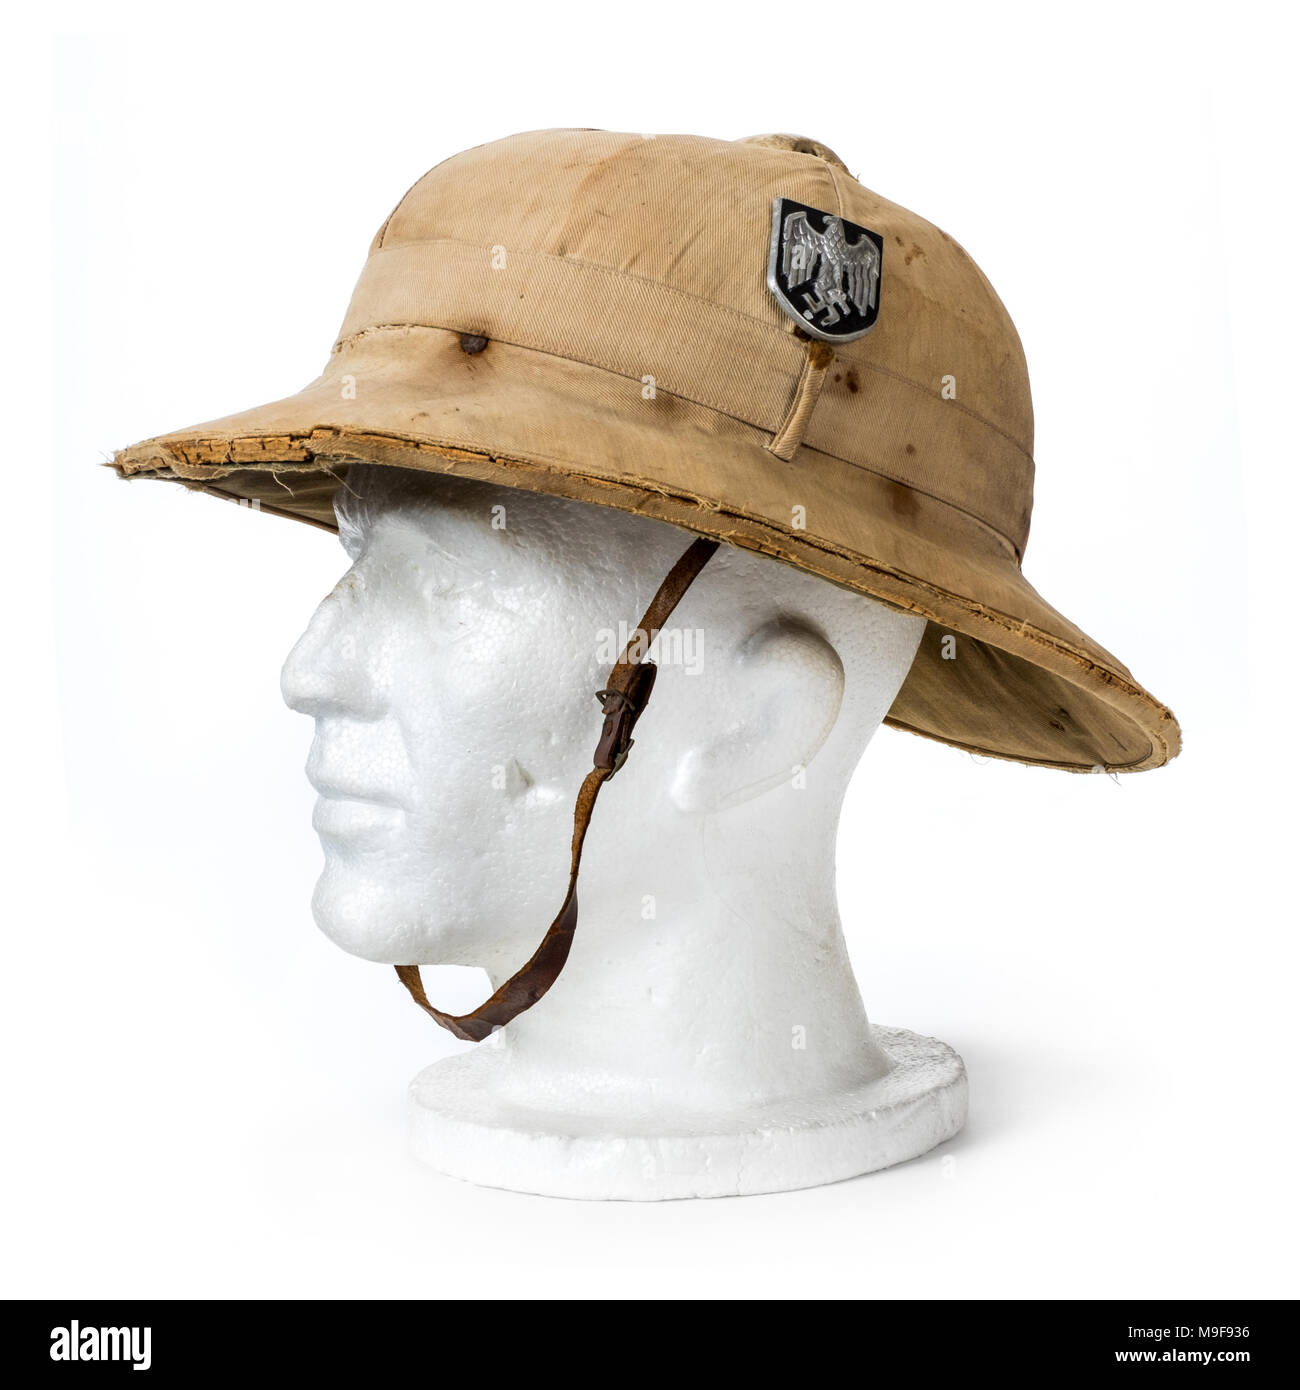 WW2 German Afrika Korps Troisième Reich casque colonial tropical d'origine avec les autocollants Wermacht avec la croix gammée et l'allemand de l'Aigle. Banque D'Images